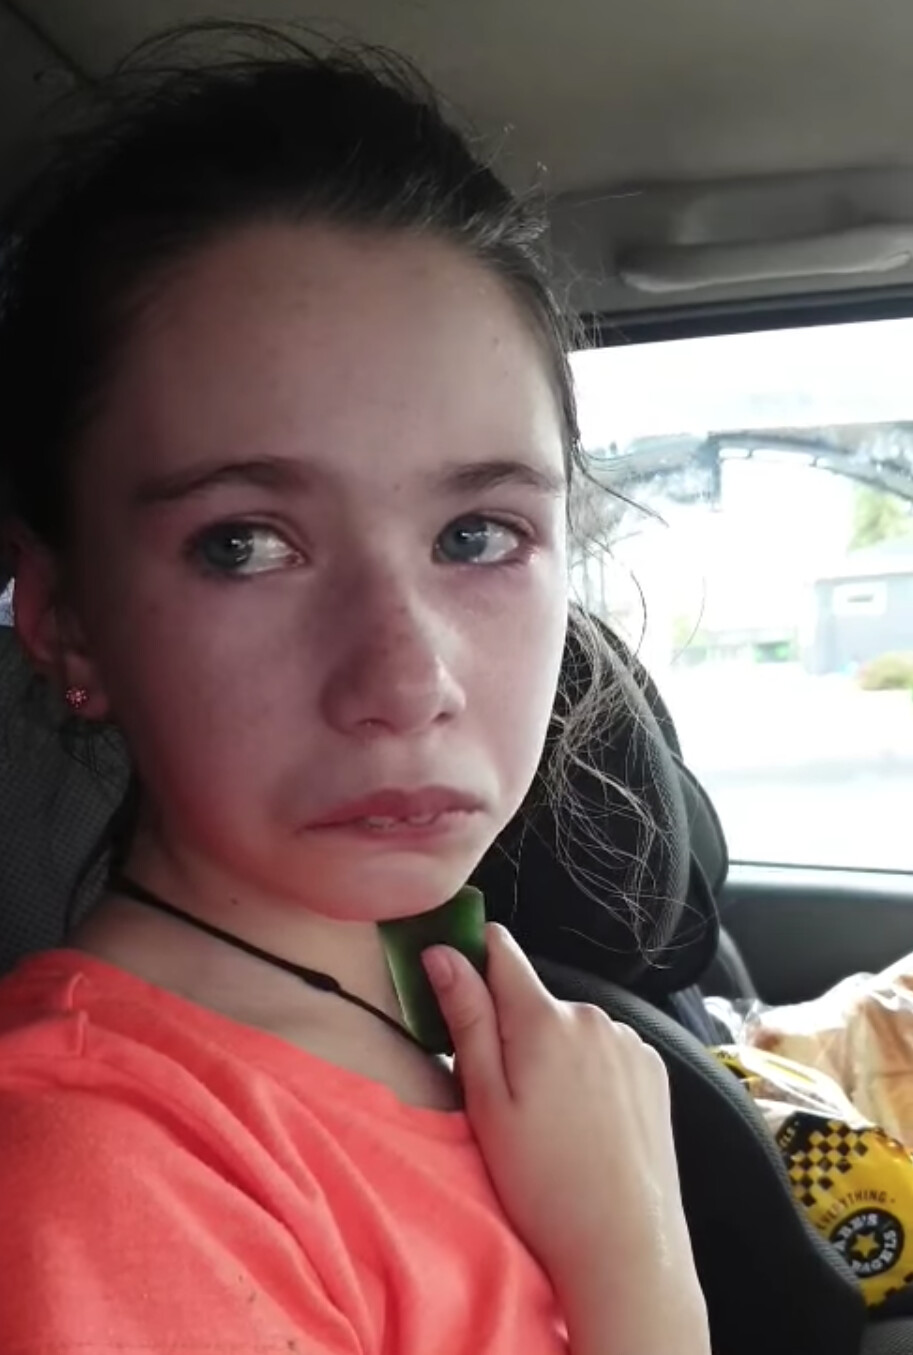 Une mère partage la vidéo émouvante de sa fille handicapée de 12 ans,  sauvagement mordue par un camarade de classe